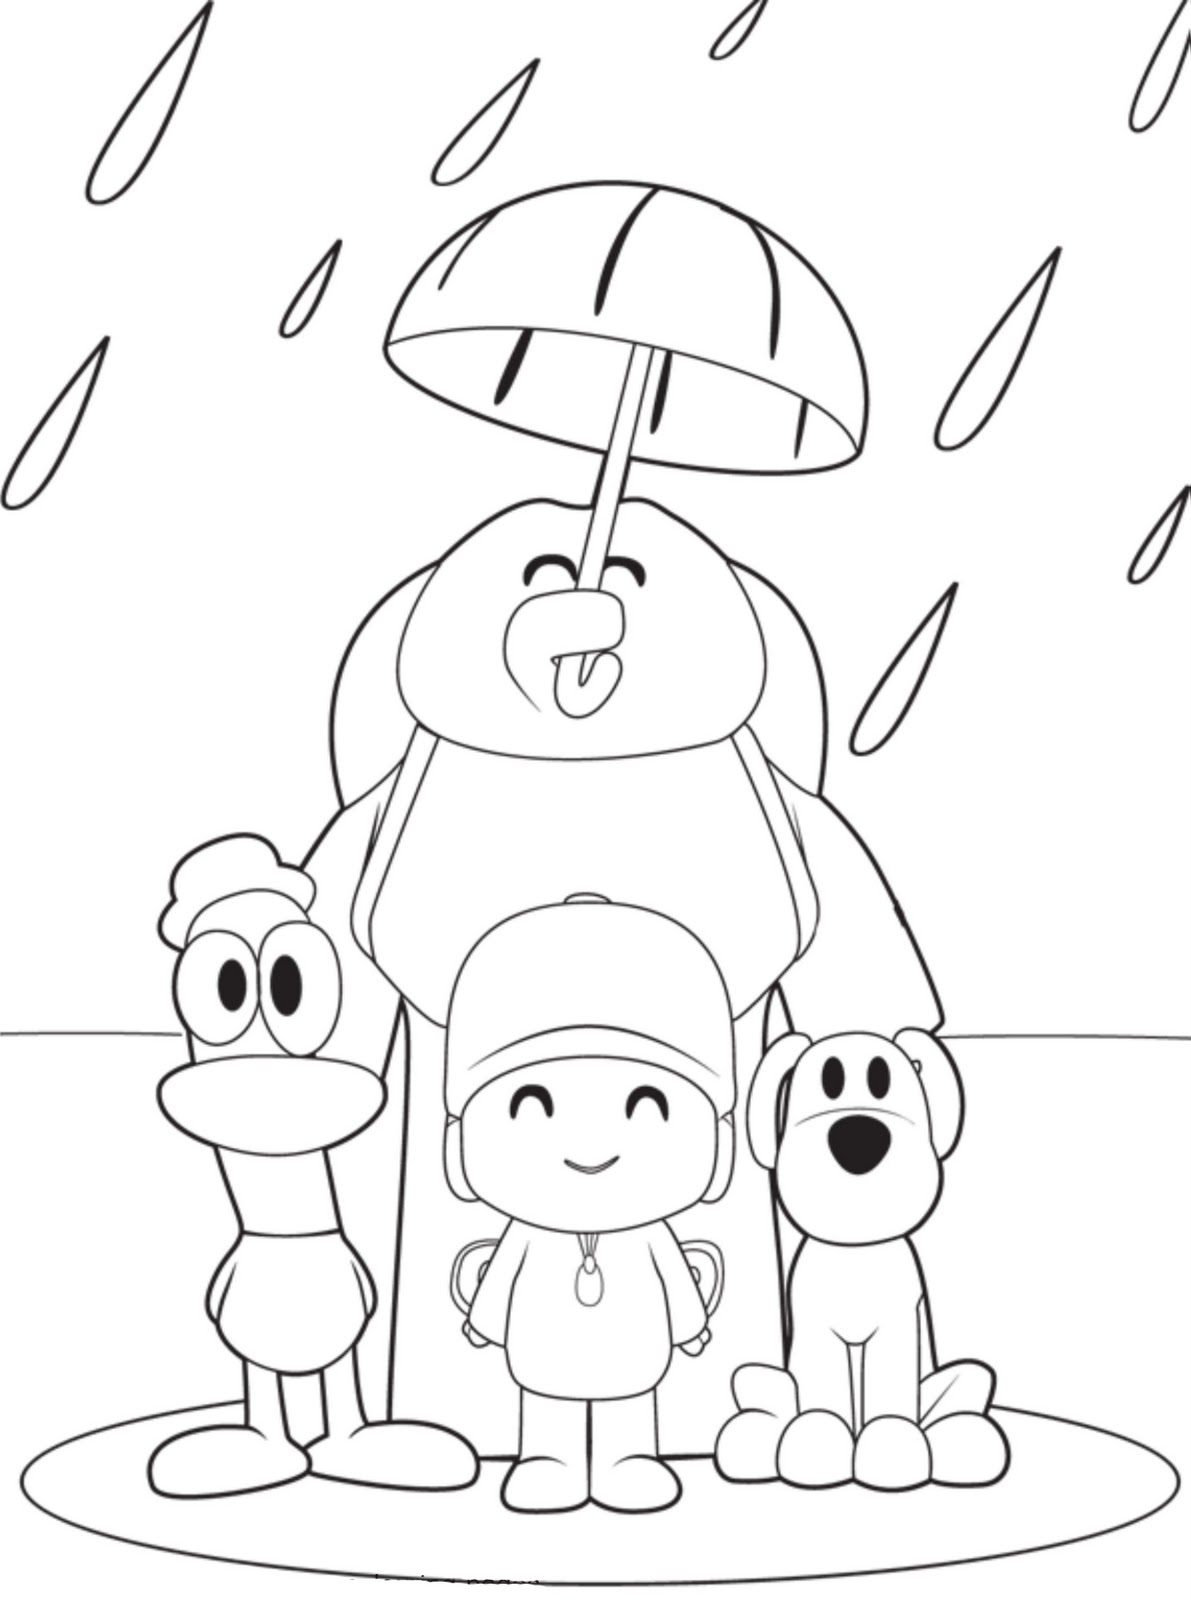 Pocoyo e i suoi amici sotto la pioggia